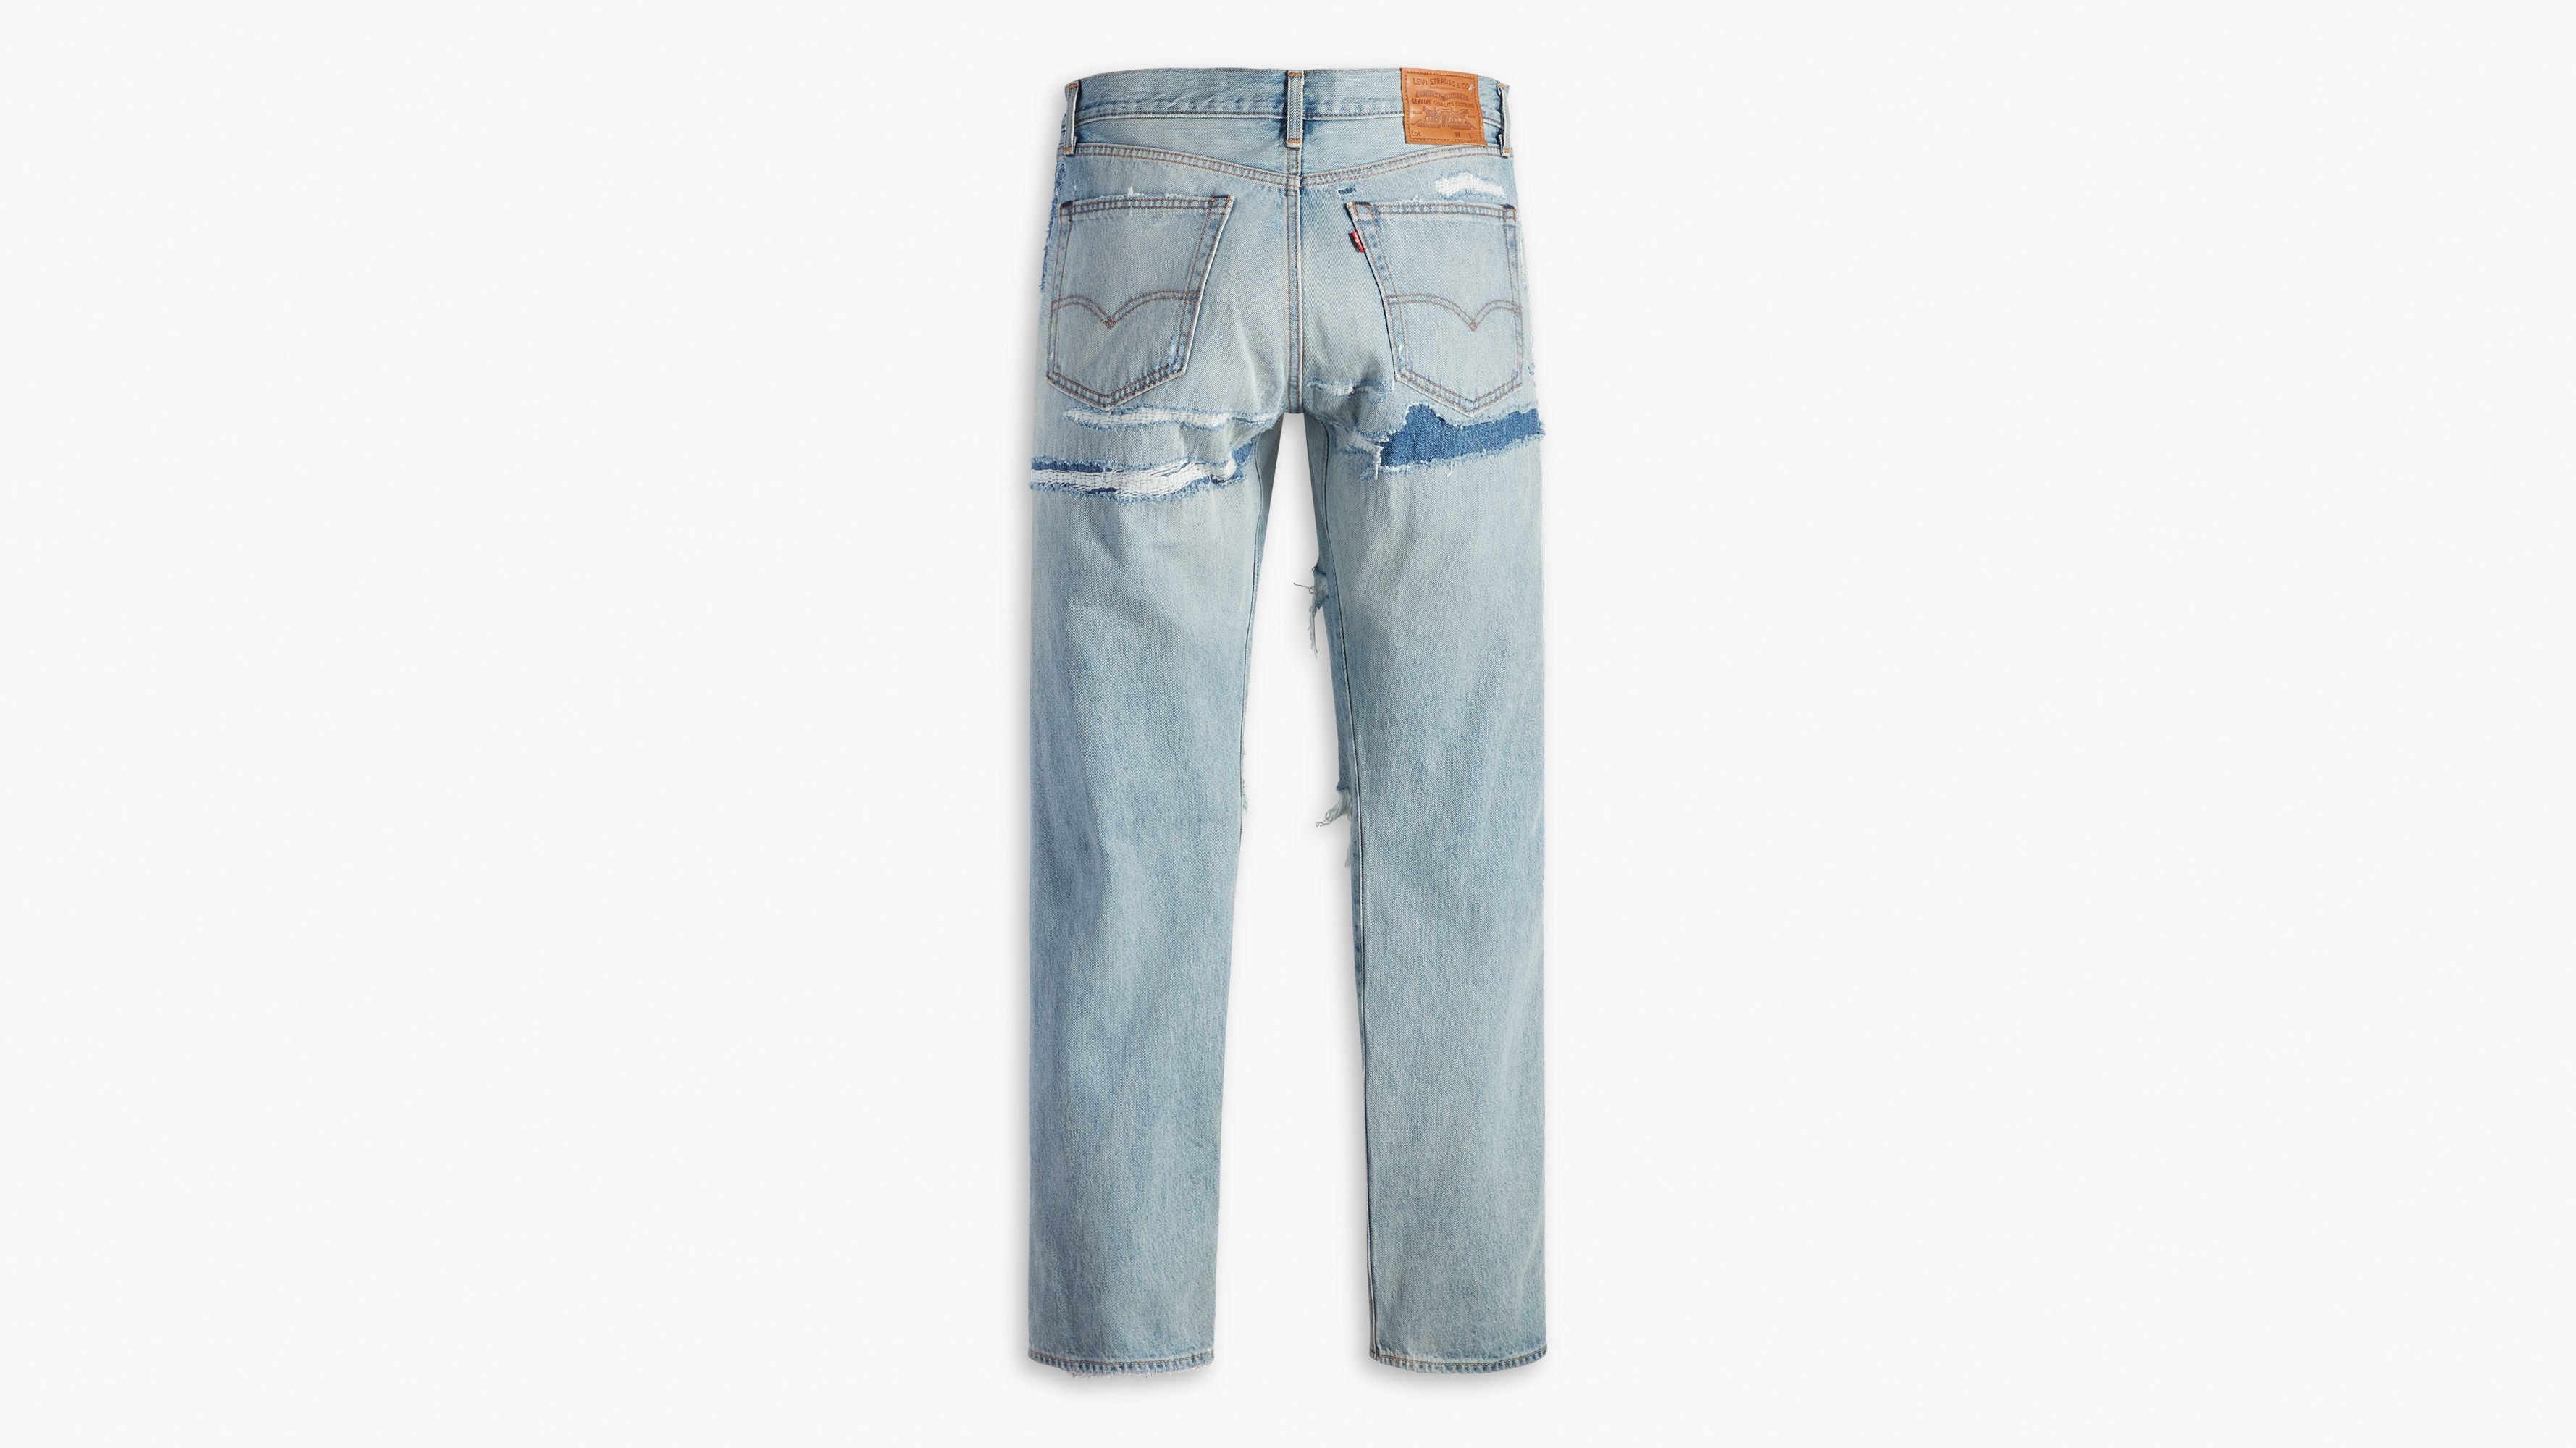 551™ Z Authentic Straight Fit Men's Jeans